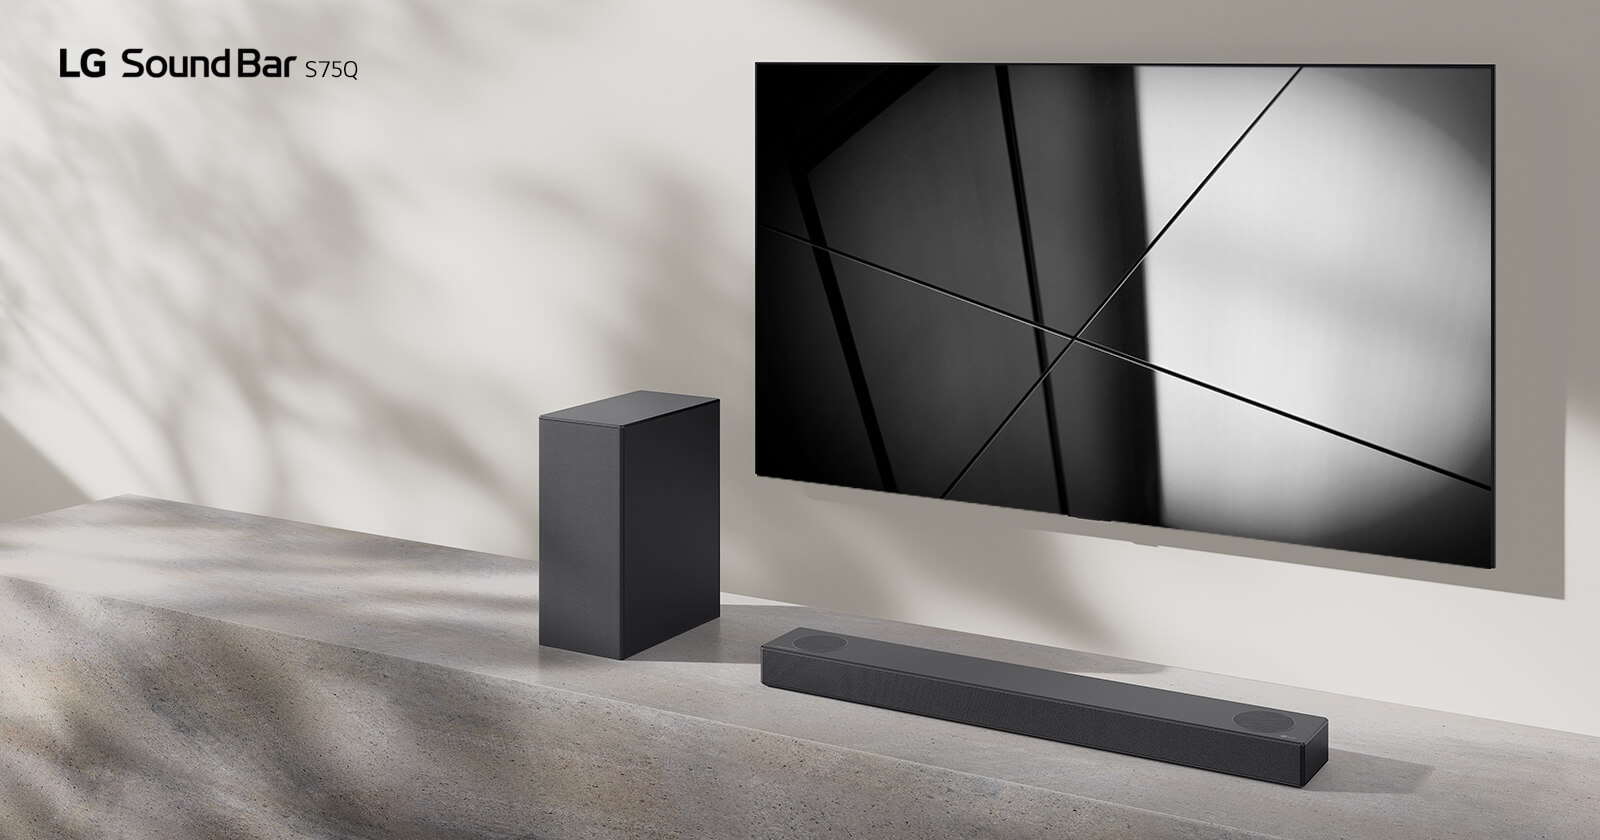 LG soundbar S75Q ja LG televiisor on paigutatud koos elutuppa. Teler näitab mustvalget pilti.